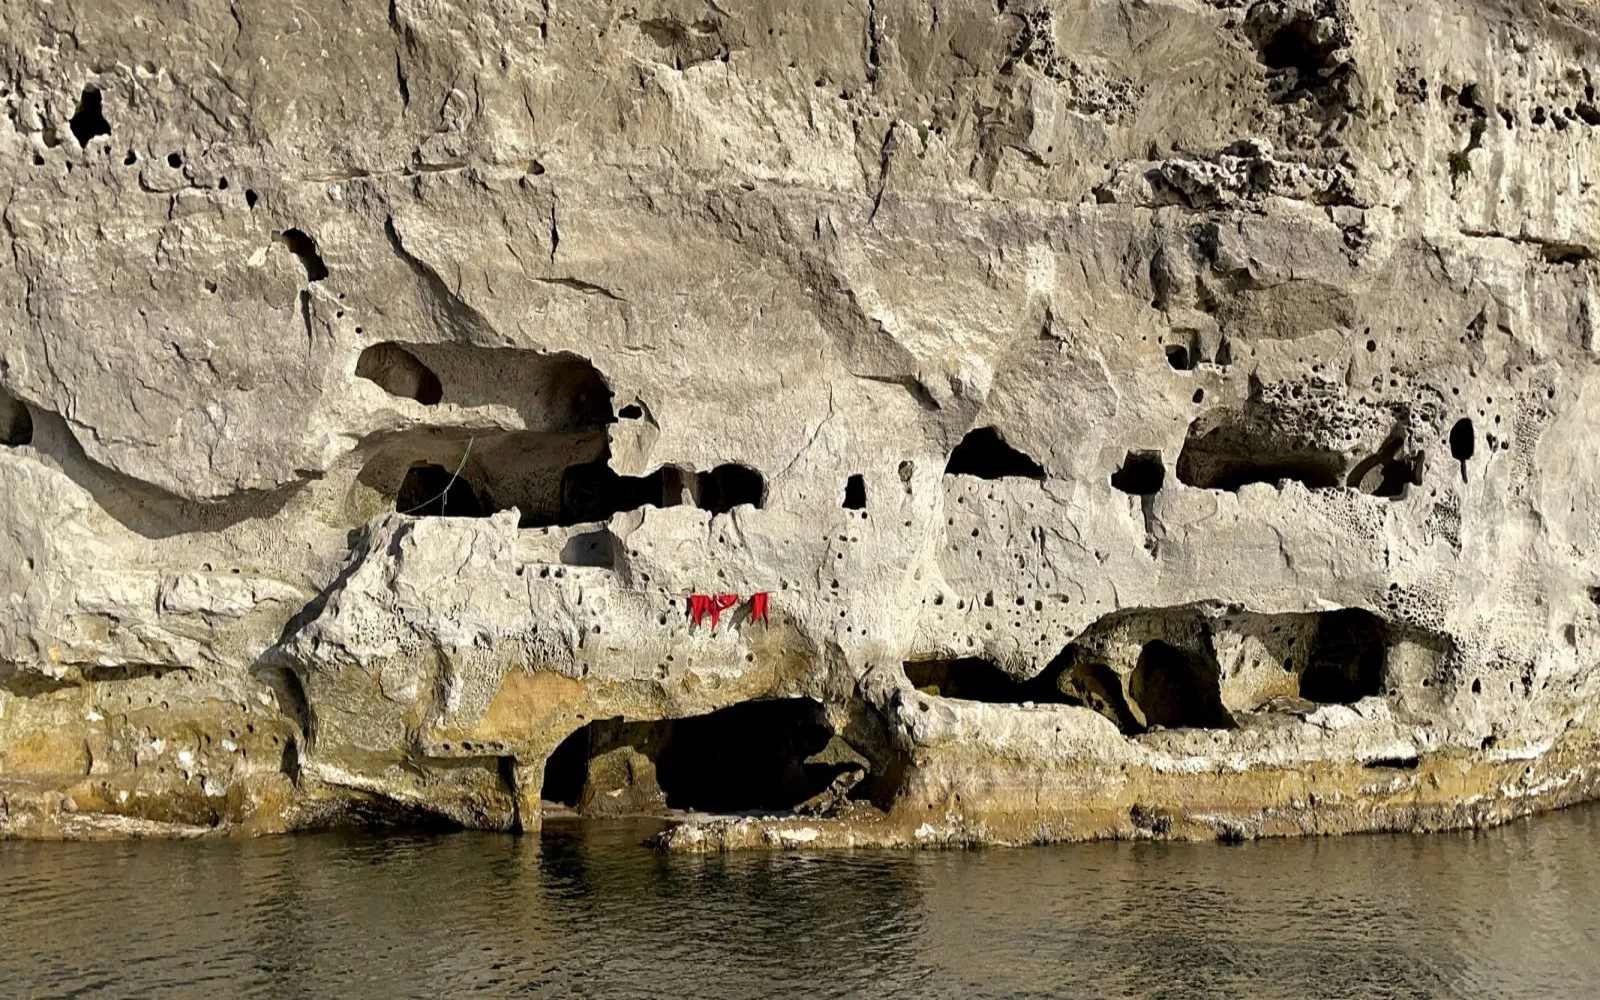 De rivier de Eufraat droogde op om de geheimen van de oudheid en de onvermijdelijke ramp te onthullen 3